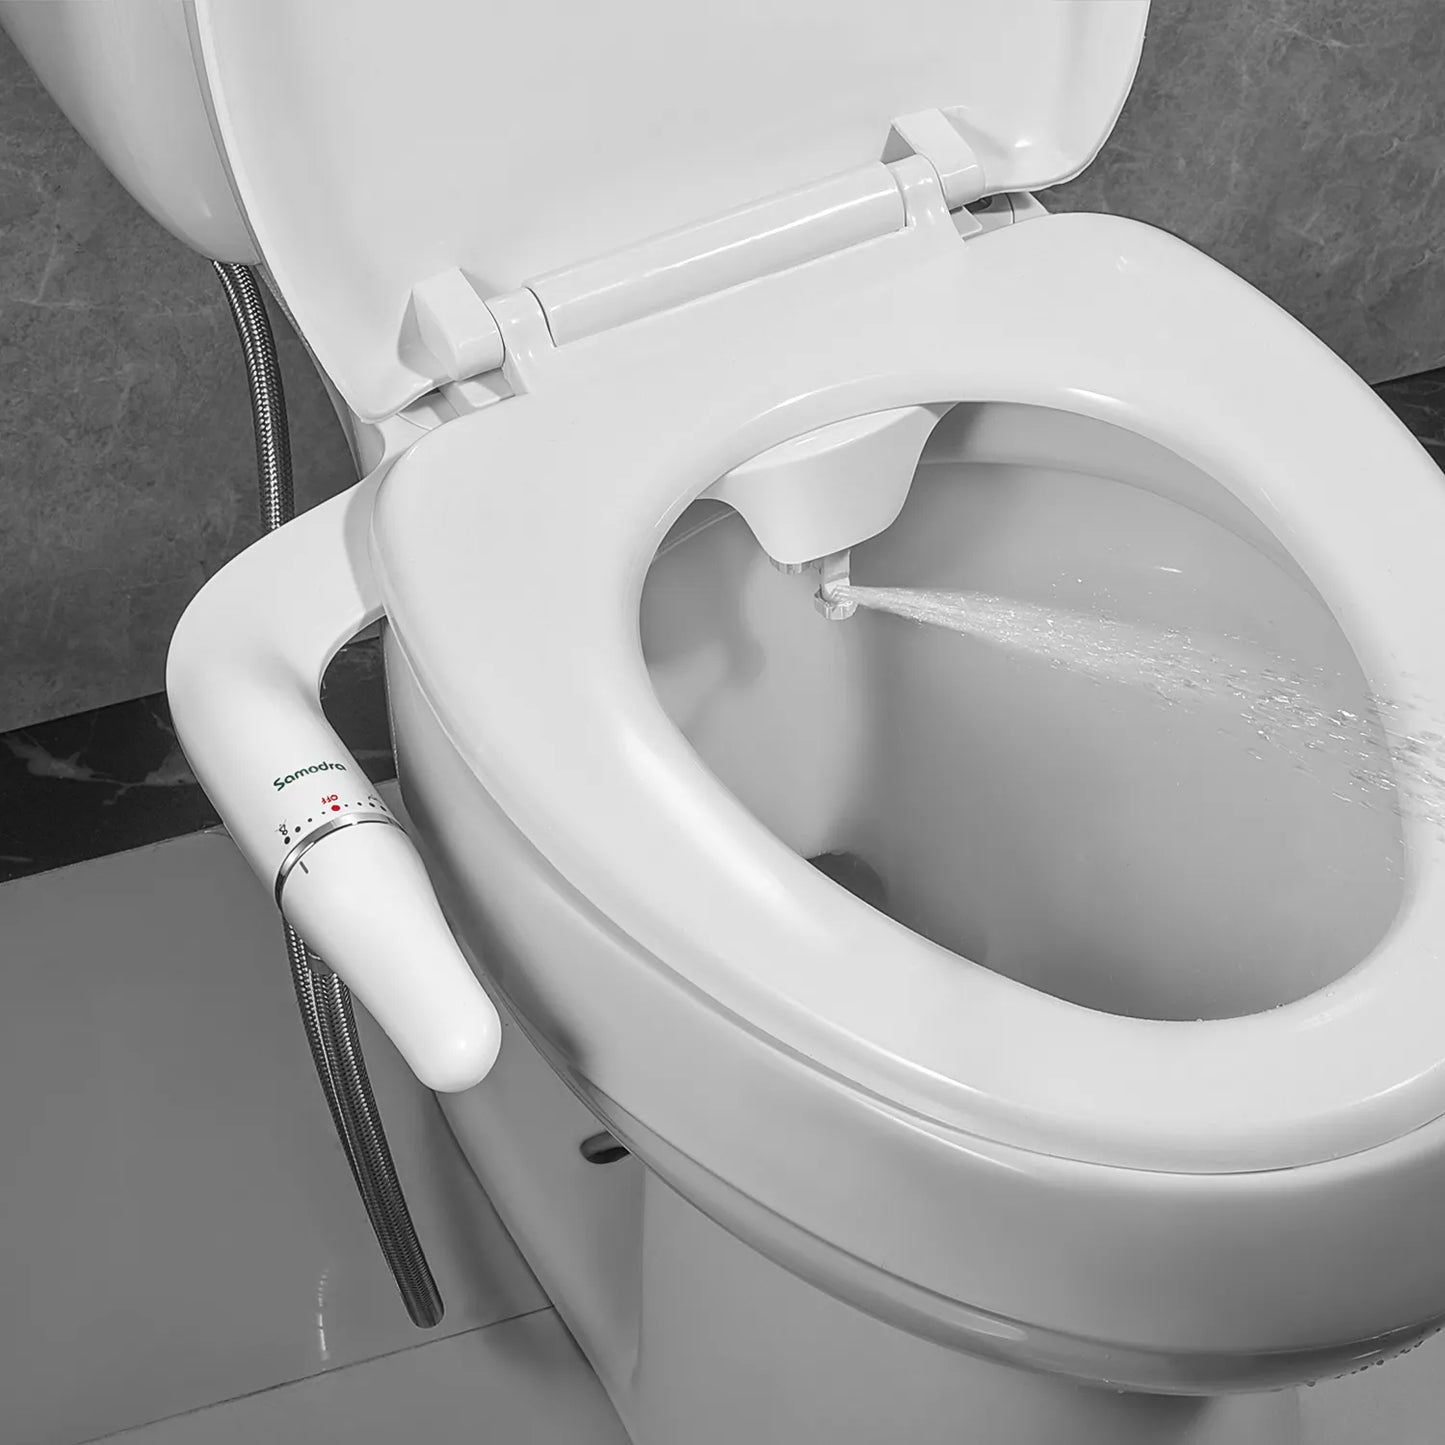 SAMODRA Toilet Bidet Ultra-Slim Bidet Toilet Seat Attachment With Brass Inlet Adjustable Water Pressure